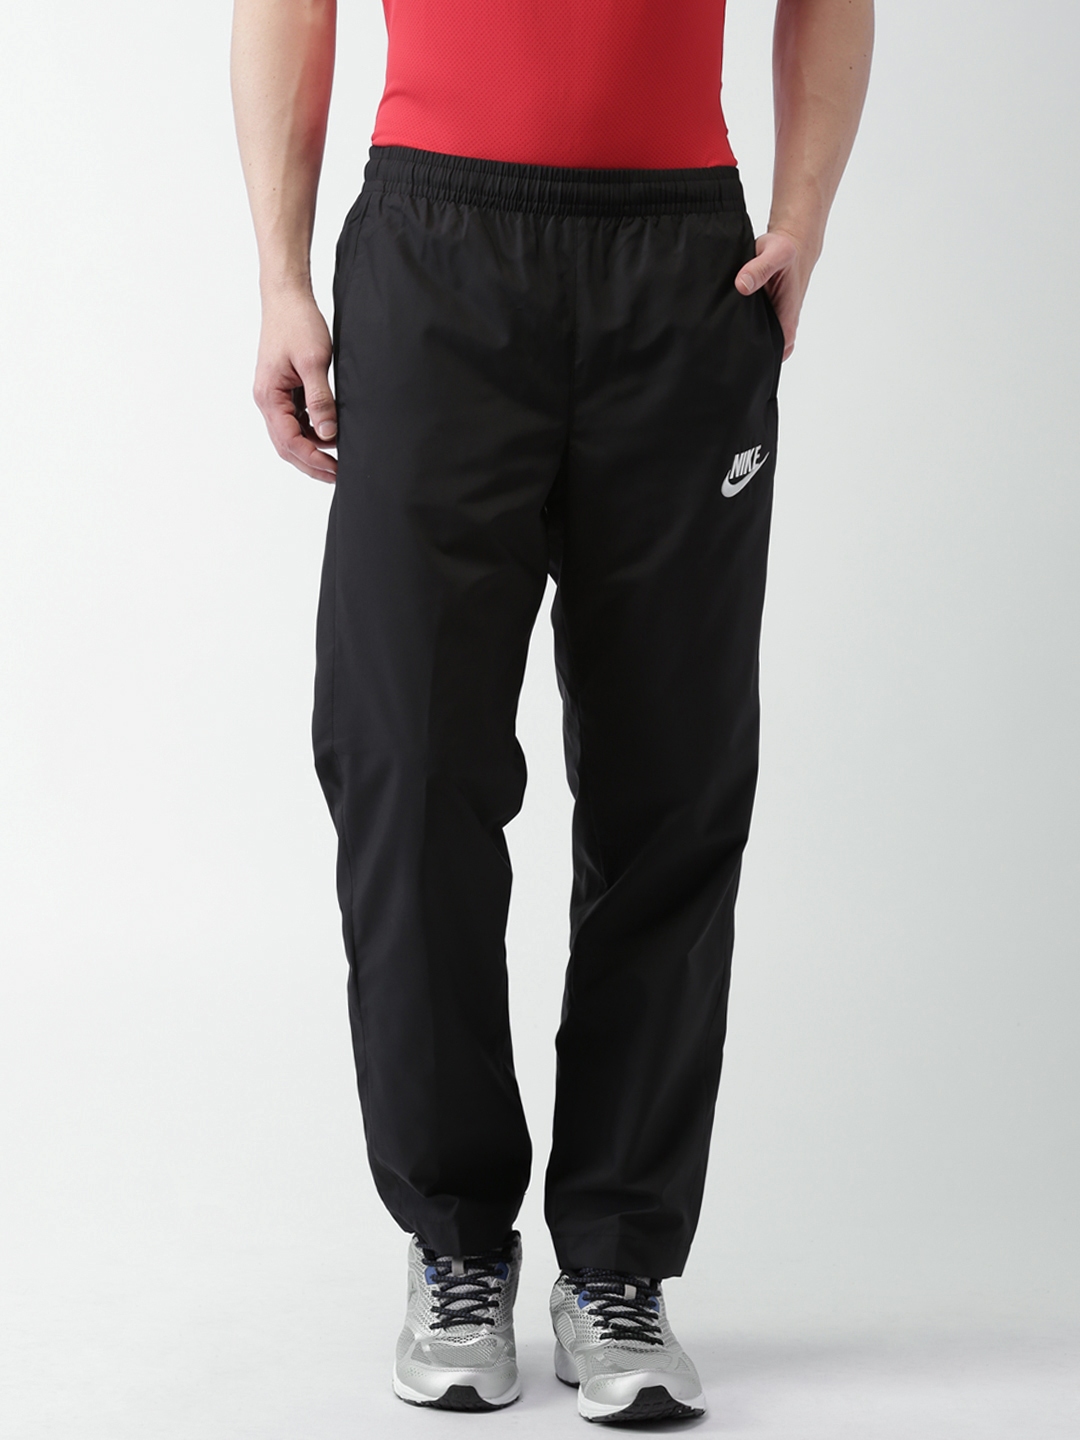 Nike Mens Polyester Track Pants  091203277405644836475XLargeObsidianObsidianWhite  Amazonin  Clothing  Accessories